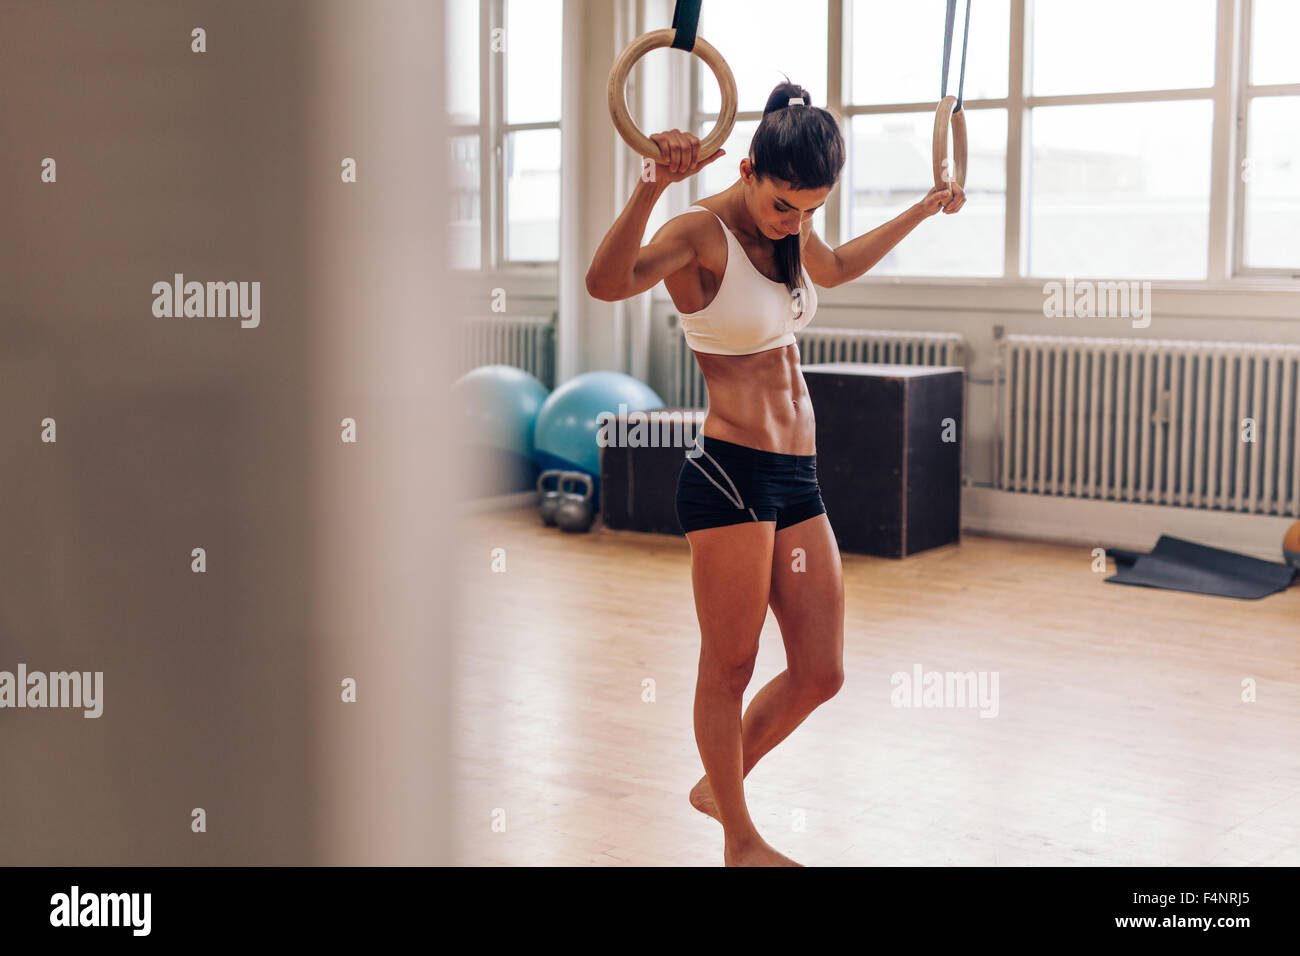 Muskulöse Frau Entspannung nach dem Training im Fitness-Studio.  Fitness-Frau Pause von Übung eintauchen. CrossFit Sprung Ring Übung. Stockfoto